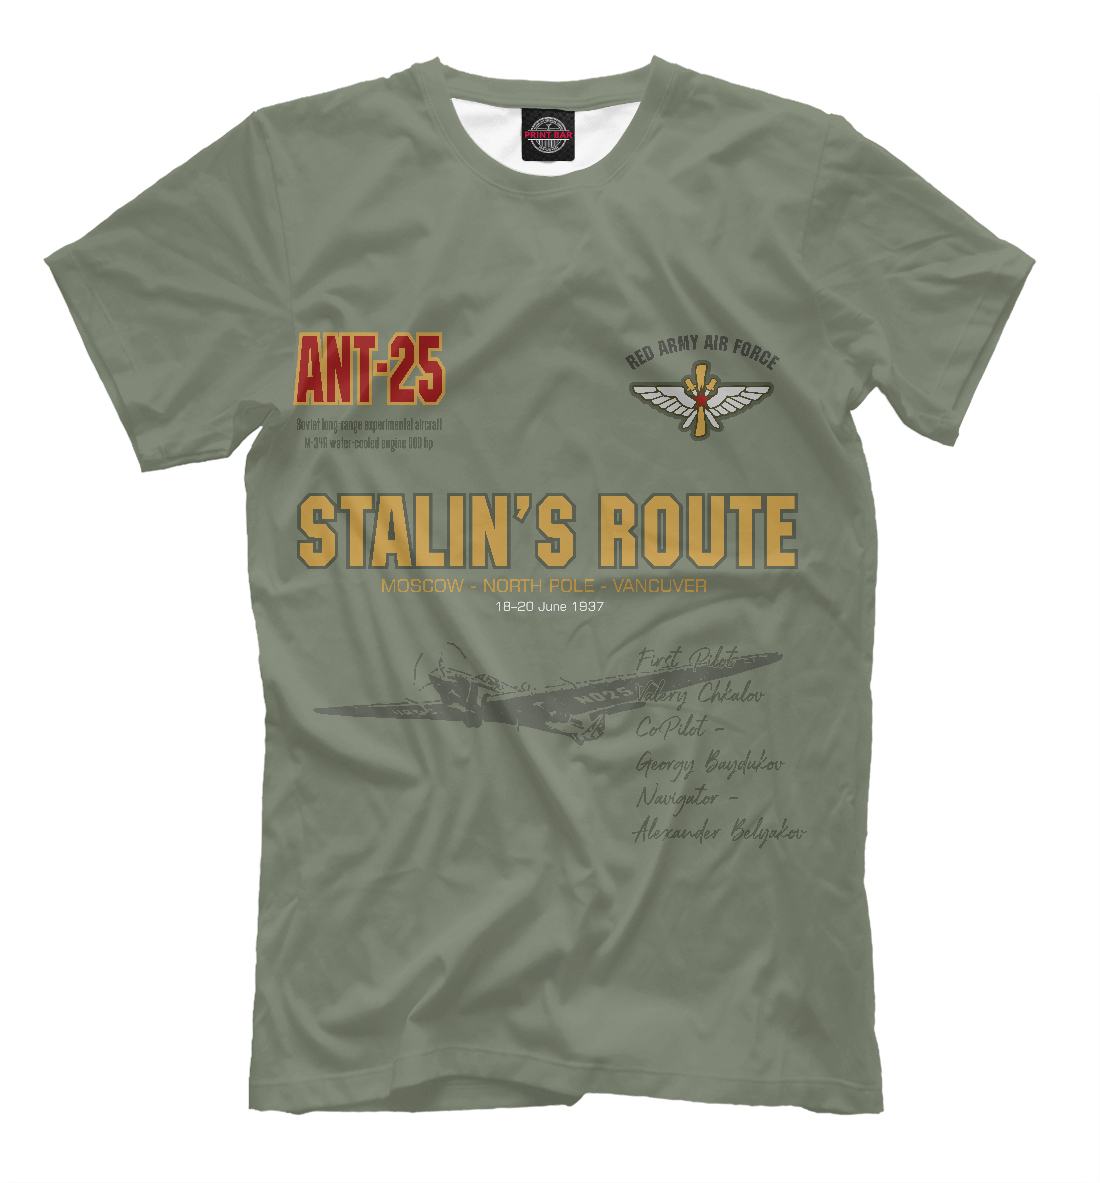 Футболка Сталинский маршрут (Ант-25) для мальчиков, артикул: VVS-536549-fut-2mp